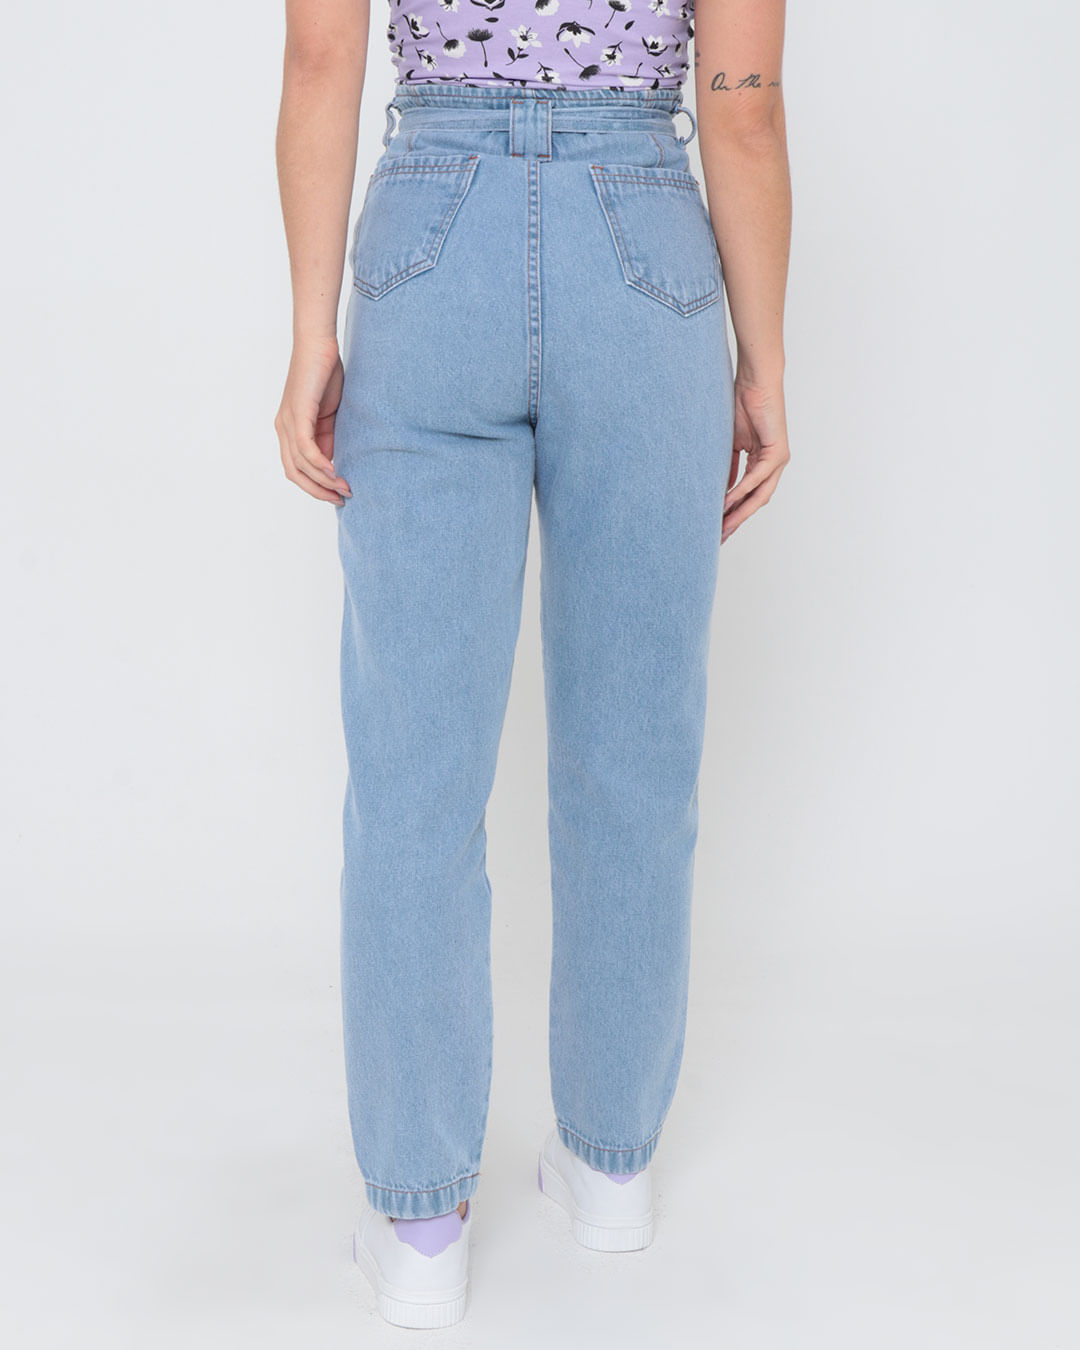 Calca-Jeans-Feminina-Clochard-Azul-Claro